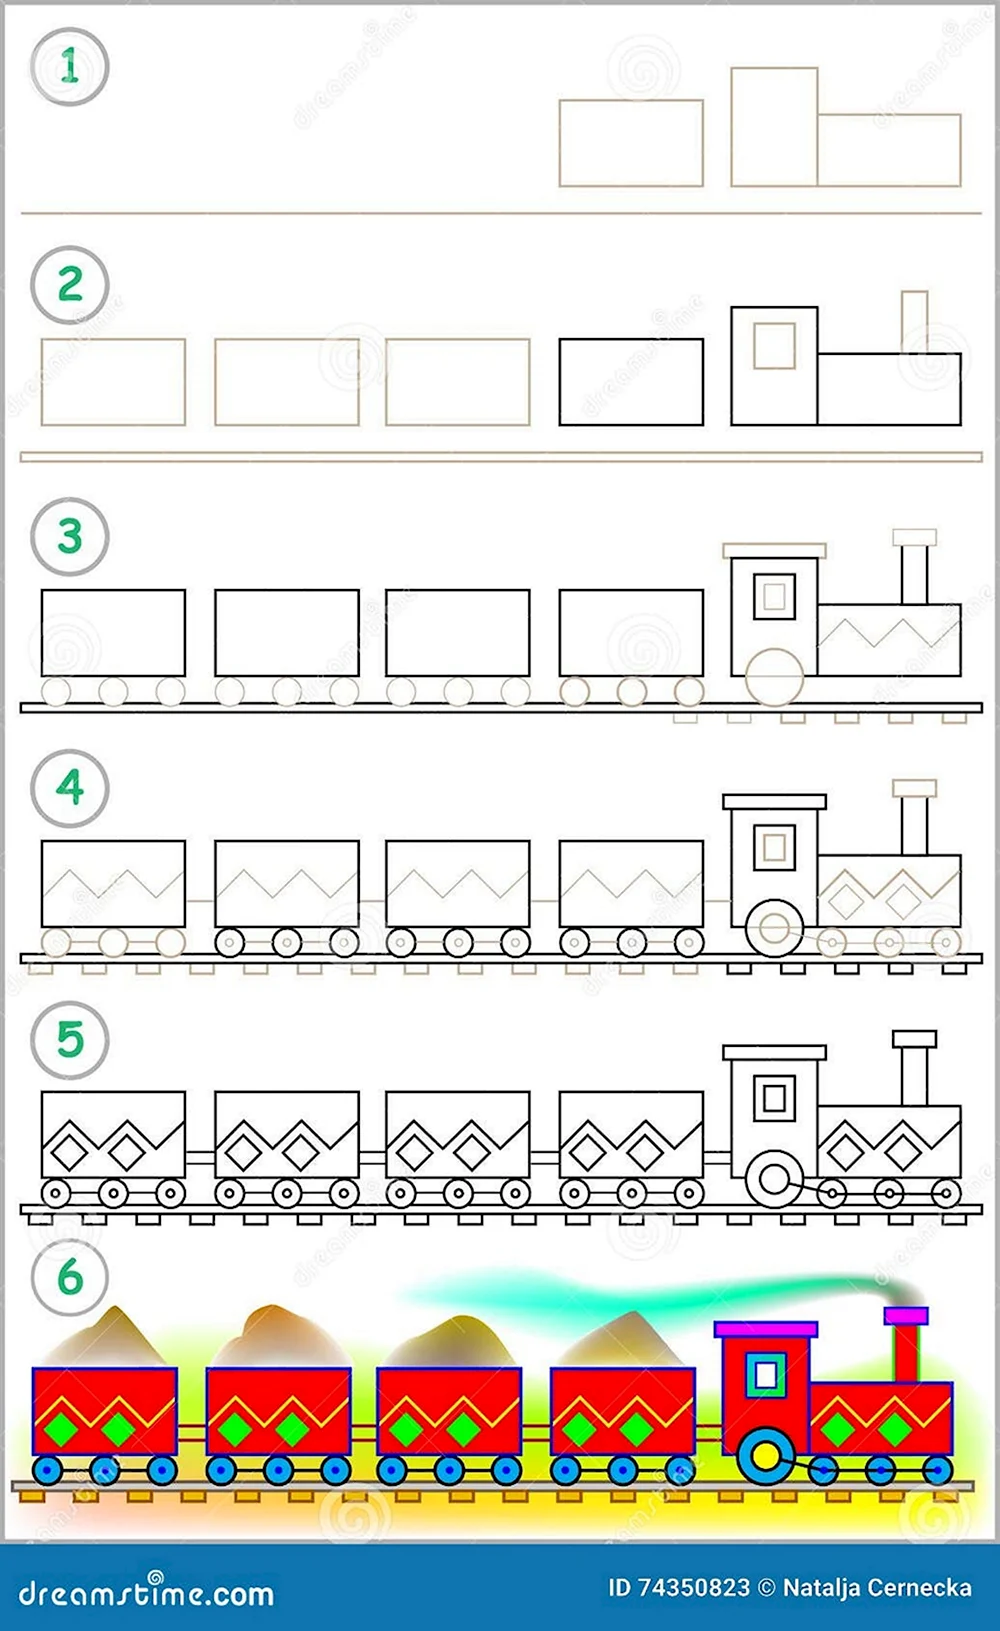 Рисование поезда в подготовительной группе